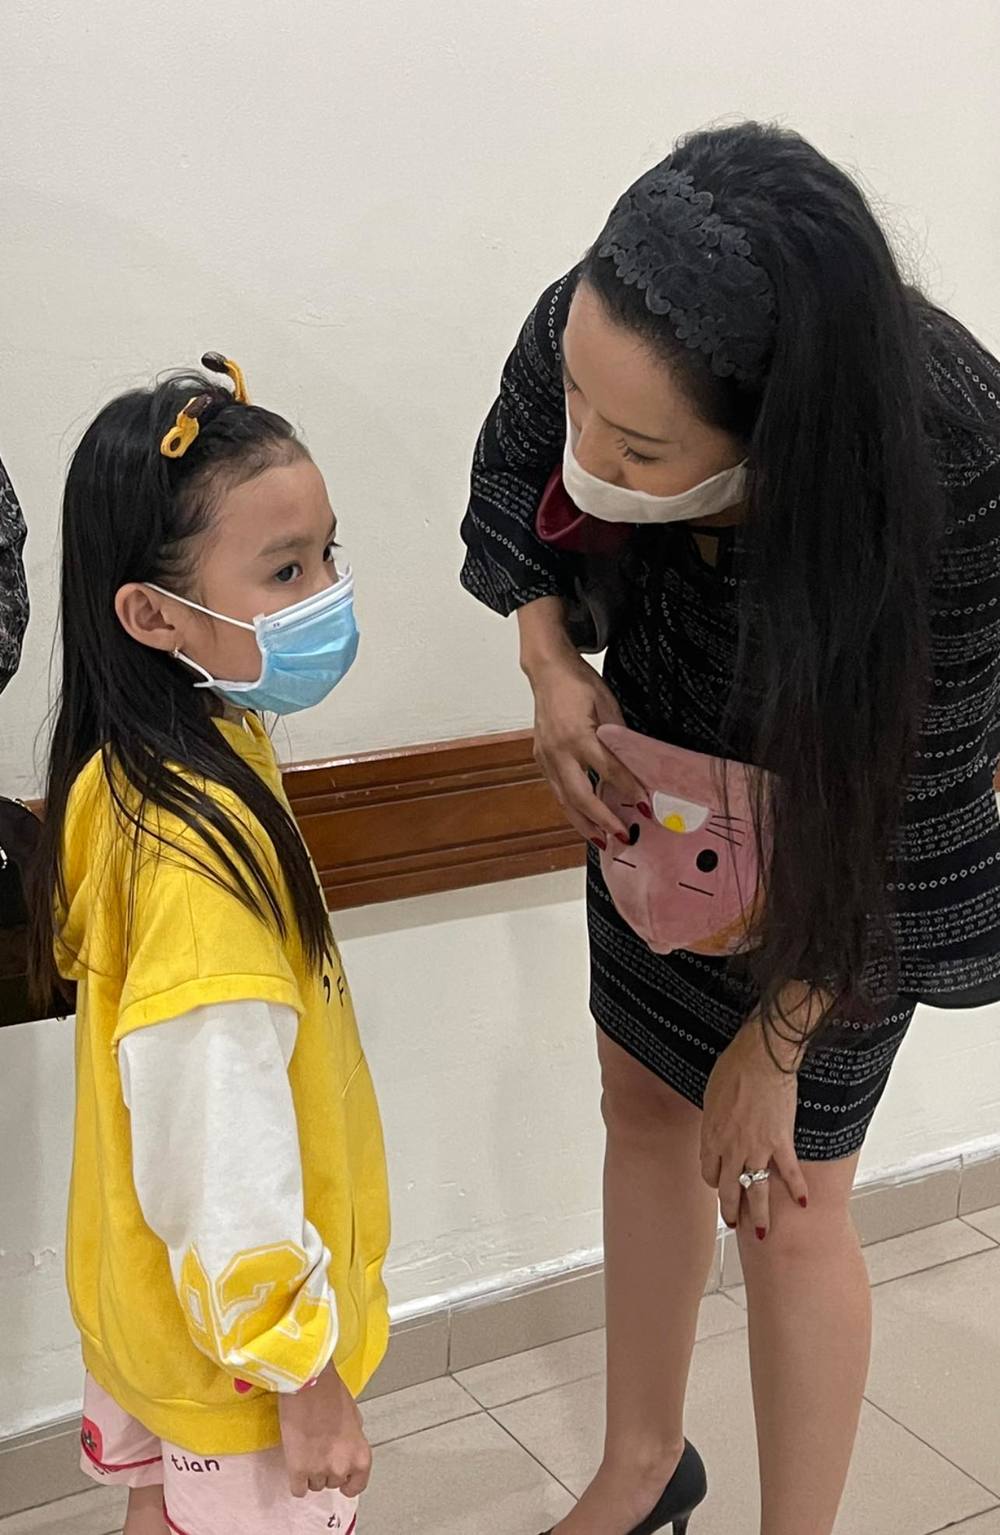  
Nghệ sĩ Trịnh Kim Chi chia sẻ hình ảnh con gái nghệ sĩ Thương Tín cũng có mặt tại bệnh viện để thăm bố. (Ảnh: FBNV)